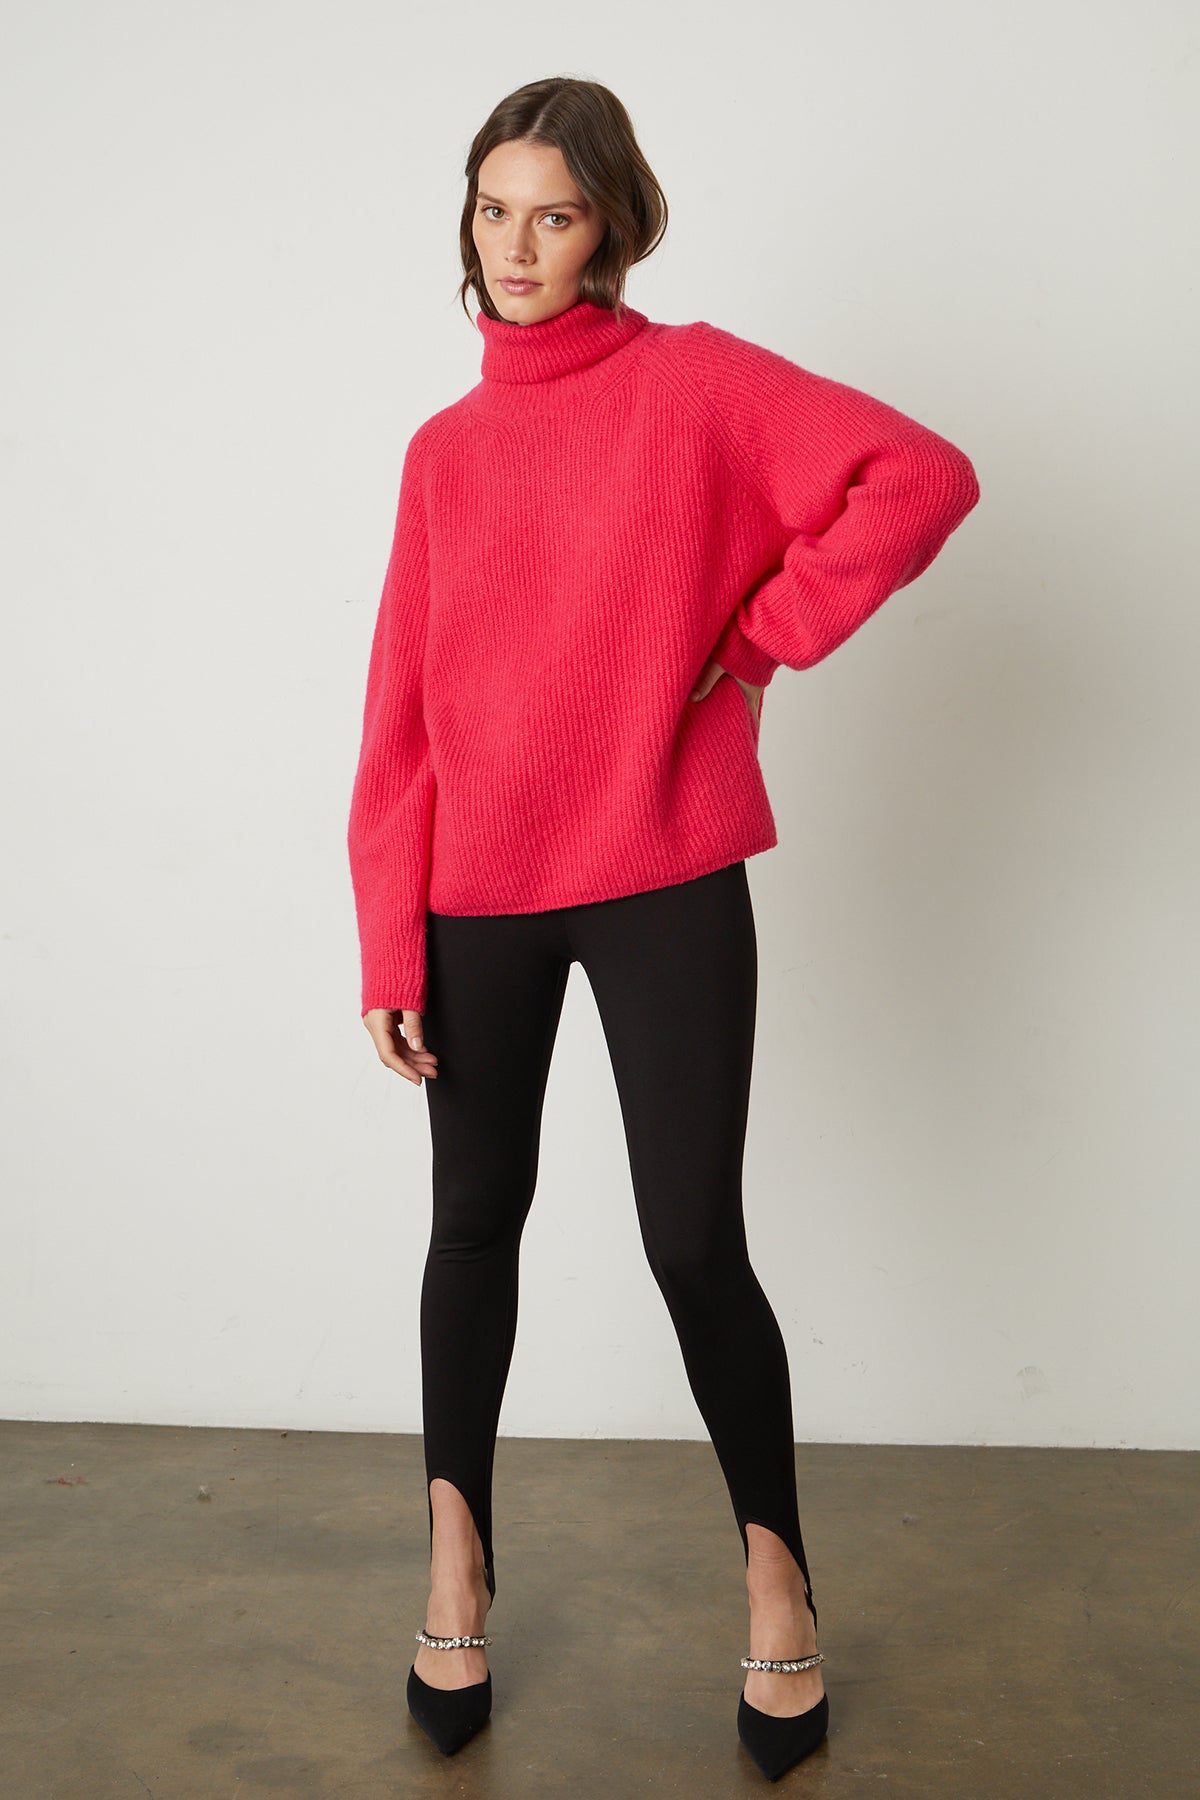   The model is wearing a Velvet by Graham & Spencer Judith turtleneck sweater and black leggings. 